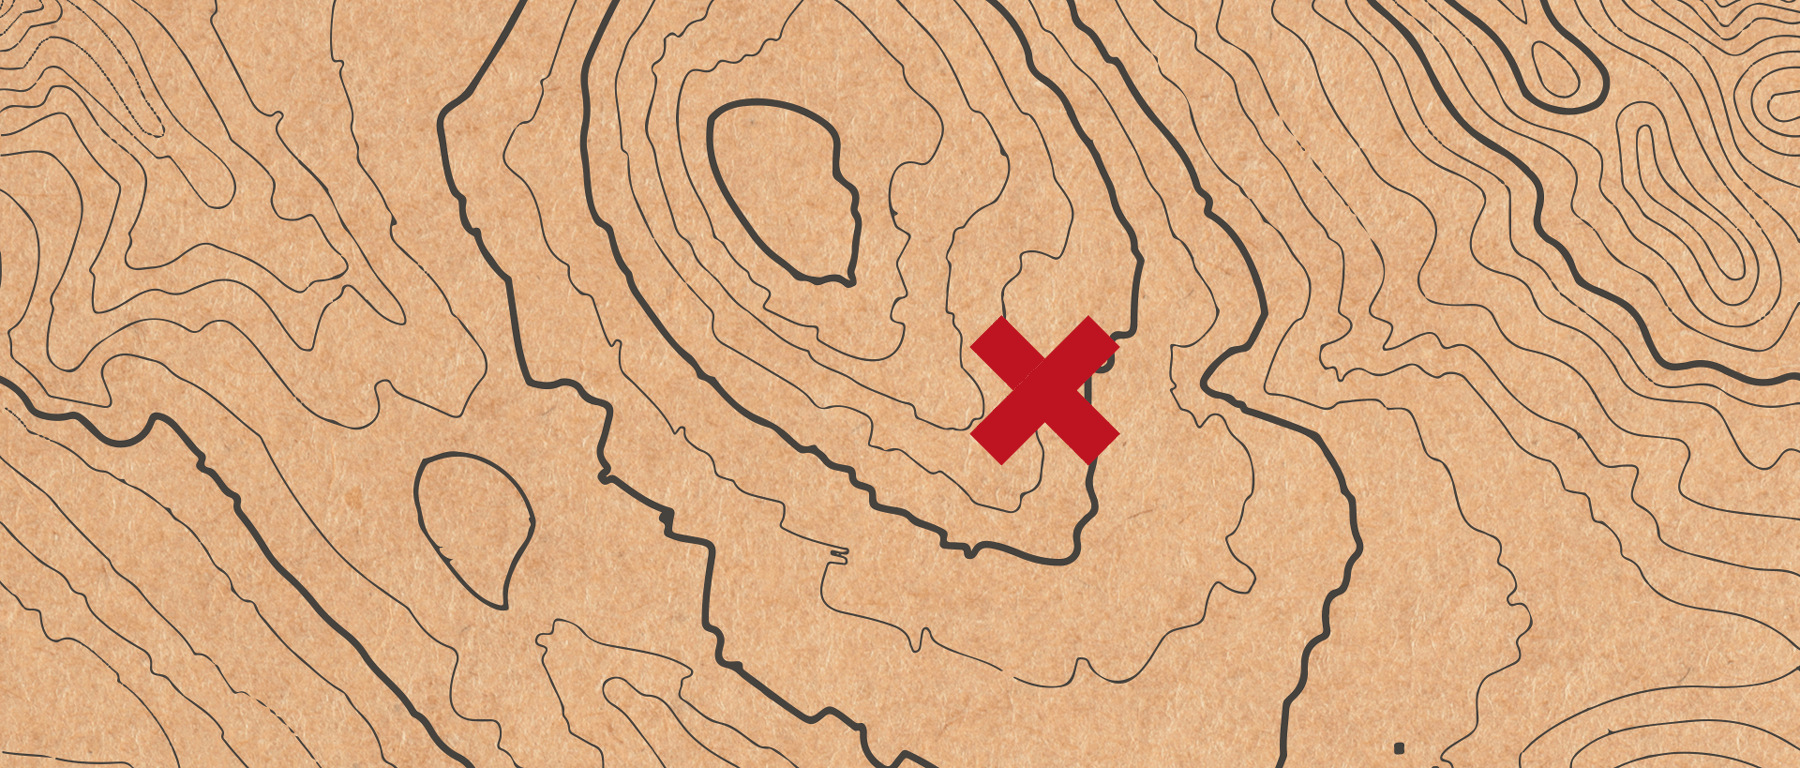 Studio La Regina - la mappa del tesoro nascosta nelle confezioni di Zafferano Del Re